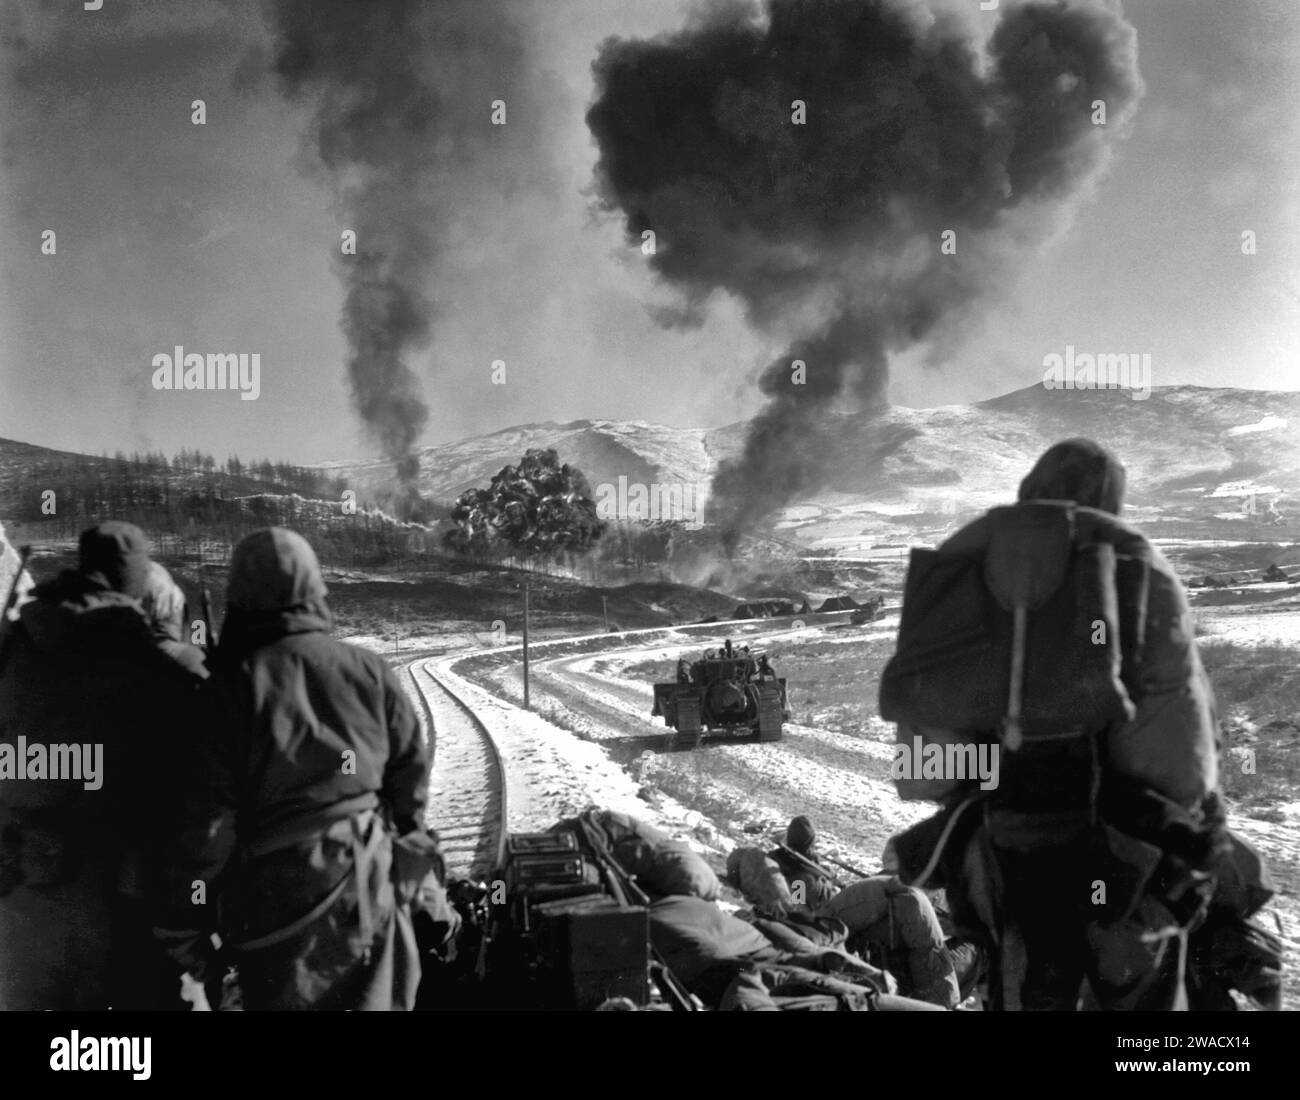 US-Marines beobachten Explosionen von Bomben, die von Marine Vought F4U Corsairs während der Schlacht am Chosin Reservoir in Korea im Dezember 1950 abgefeuert wurden Stockfoto